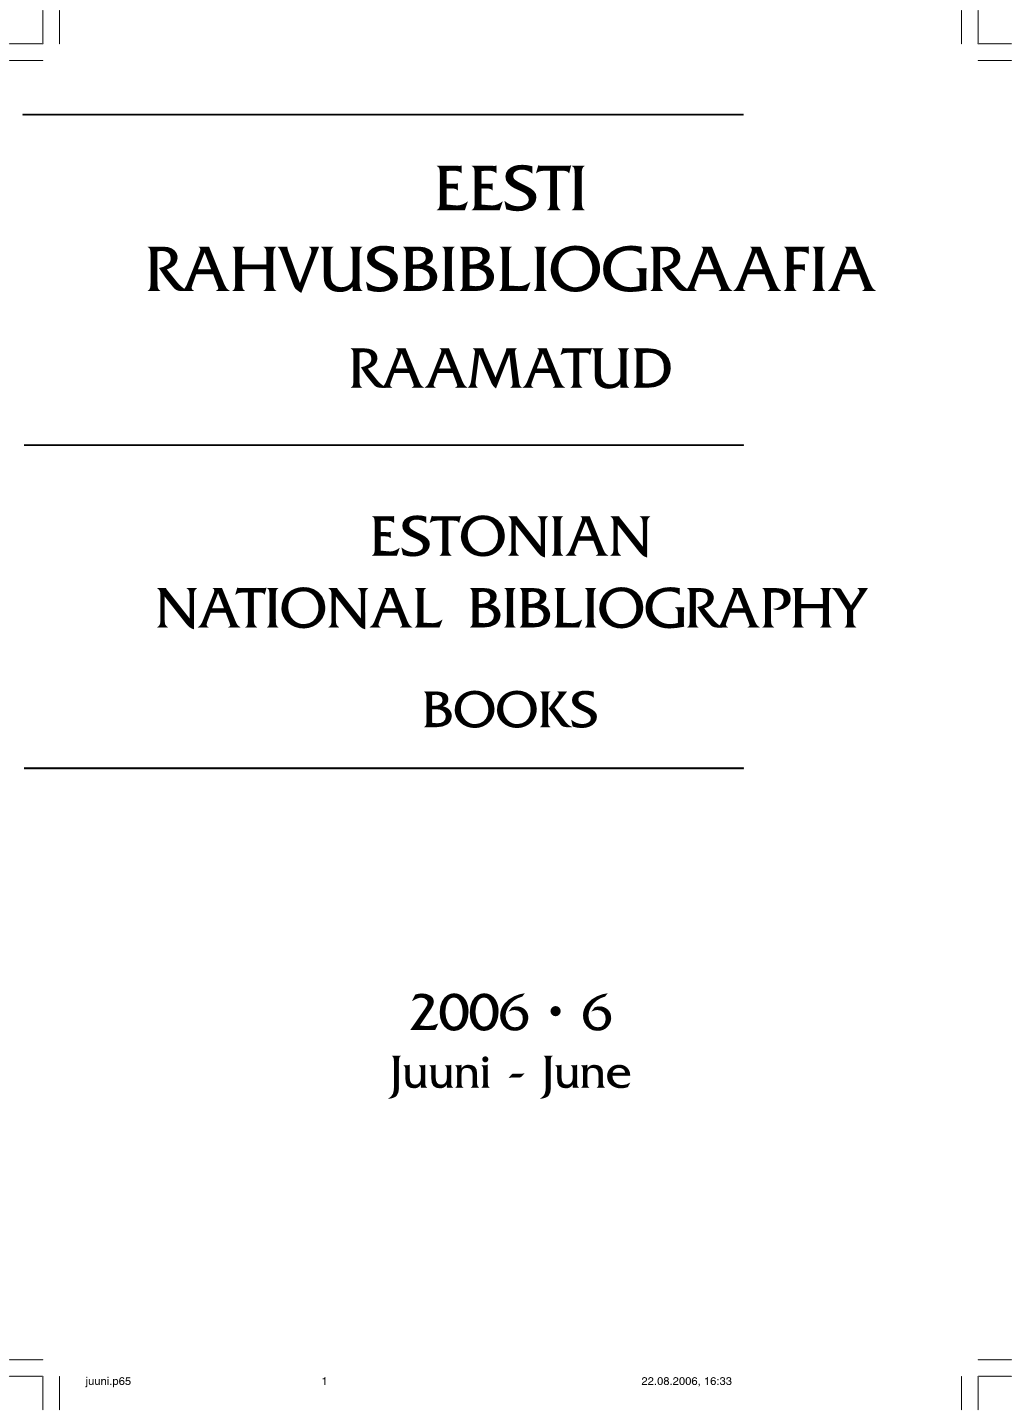 Eesti Rahvusbibliograafia Raamatud